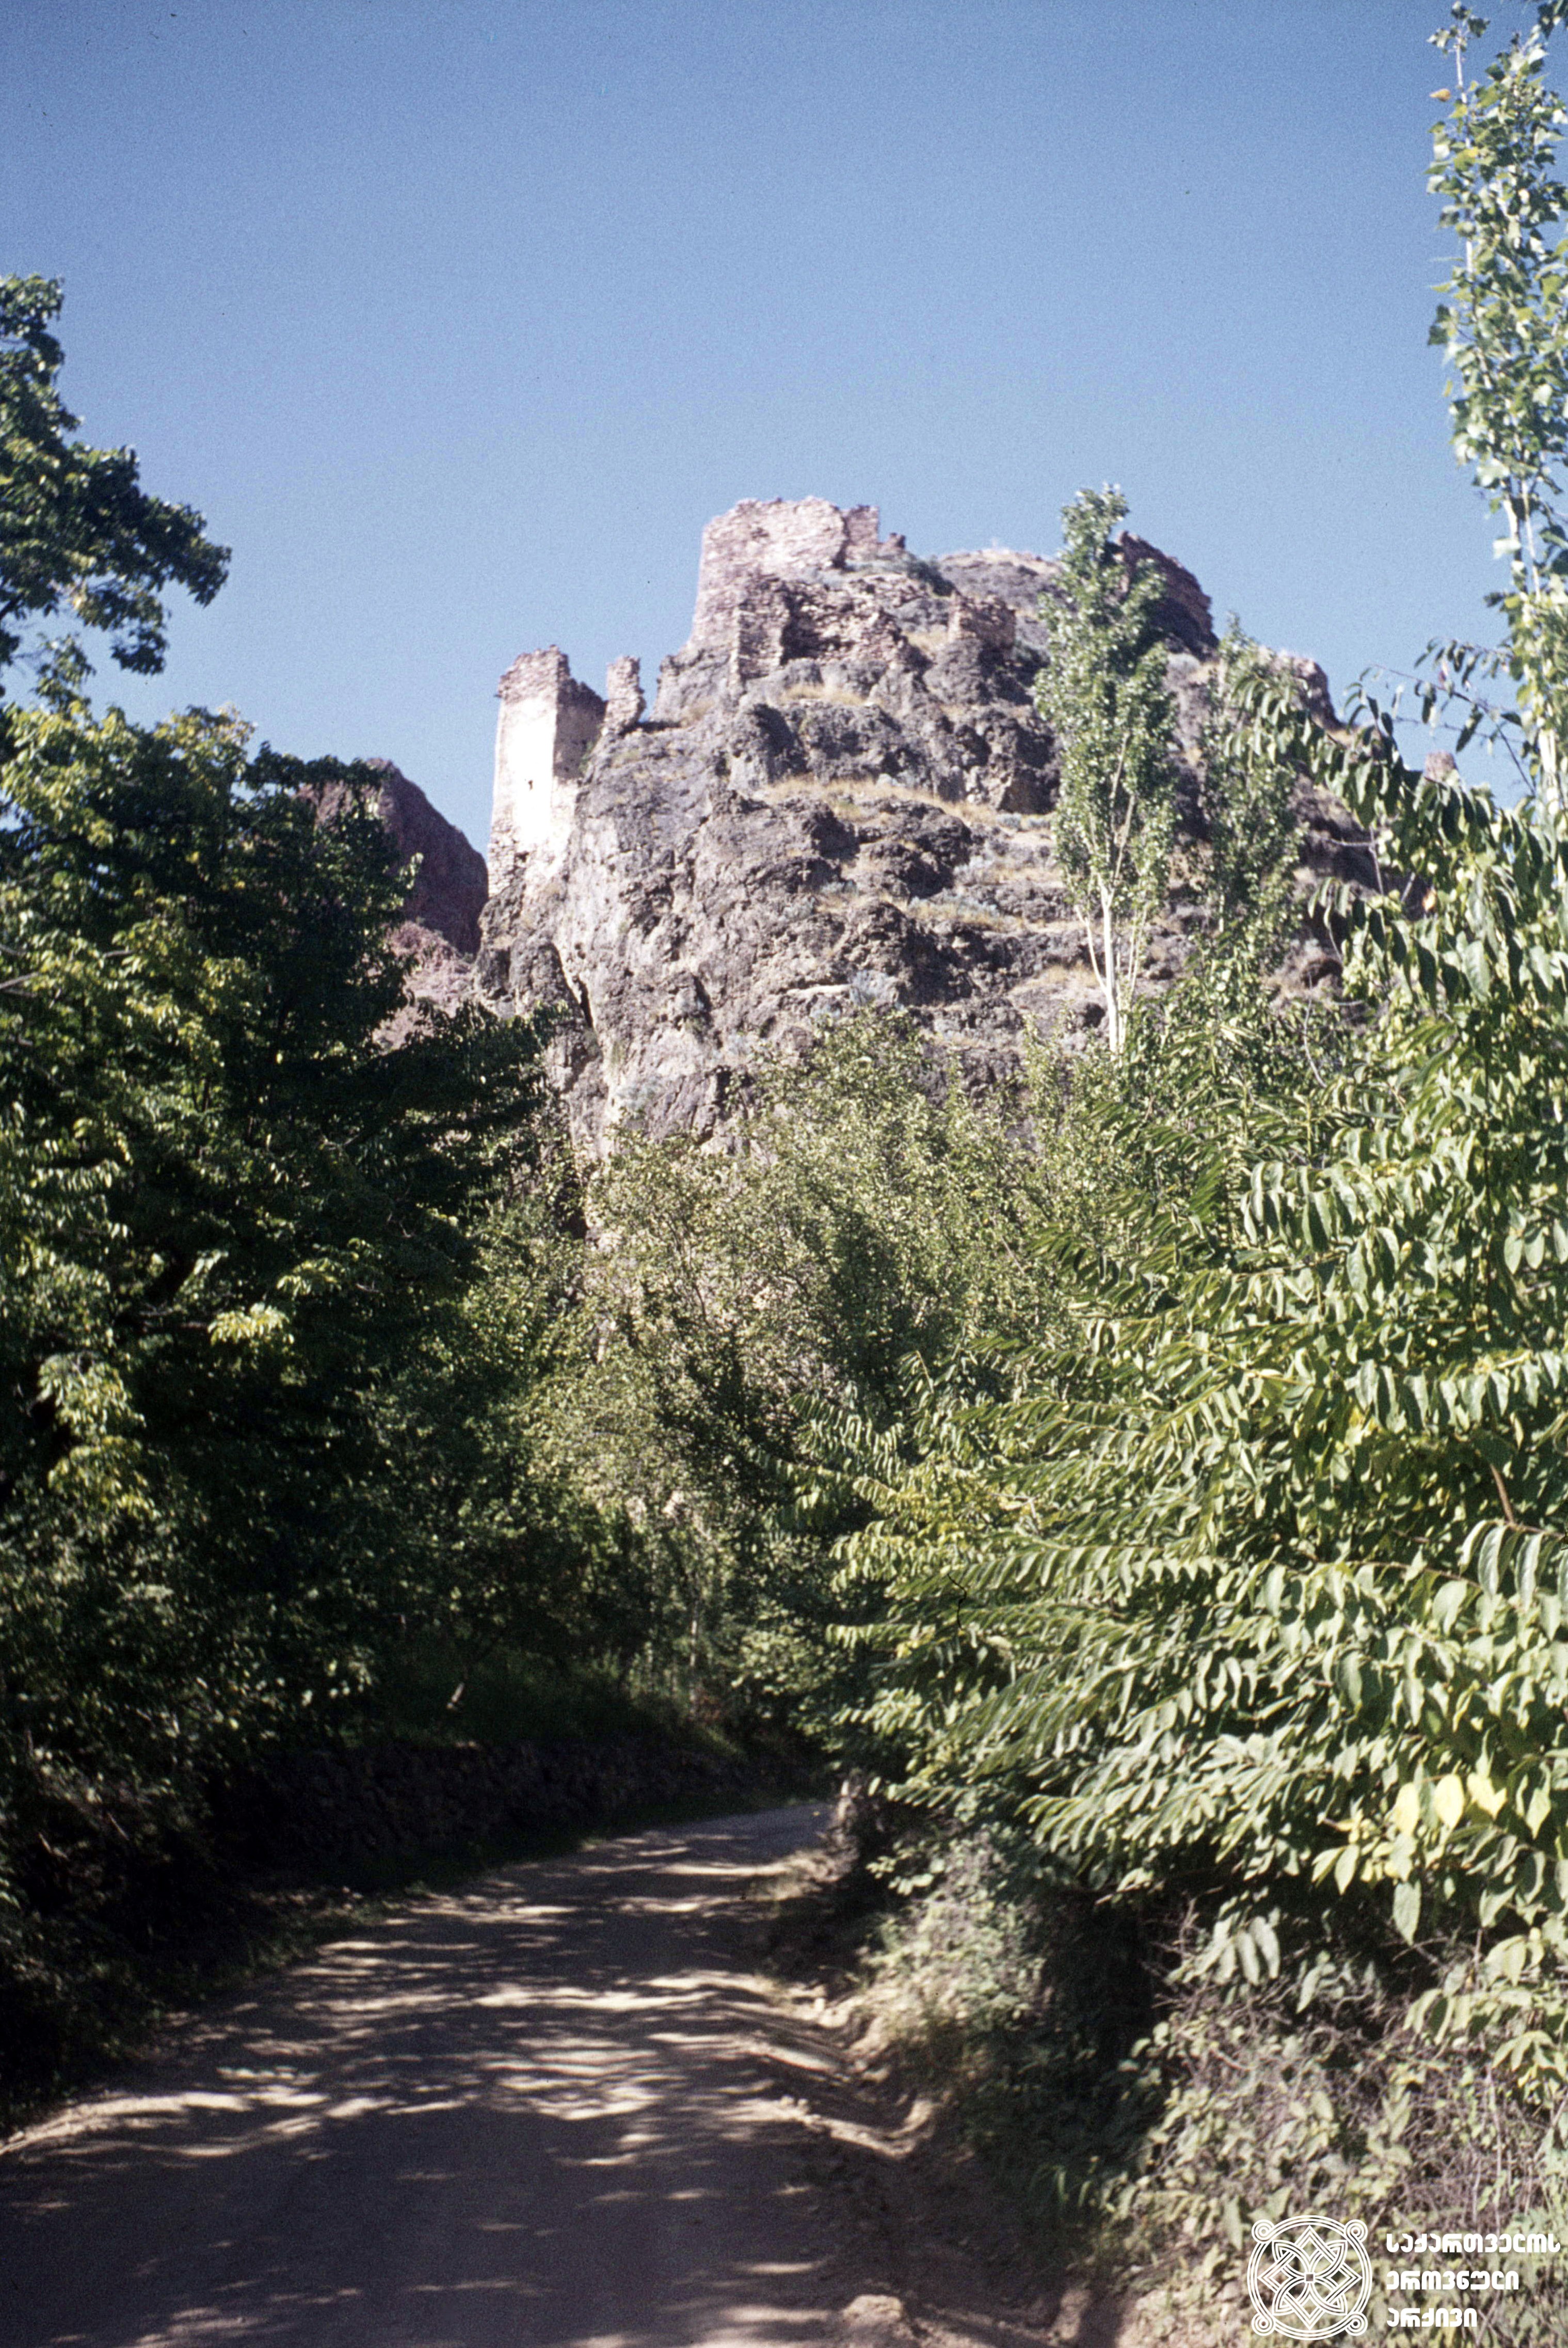 [1950-70-იანი წლები]
კავკასიძეების ციხე
<br>
[1950-70]
Kavkasidze castle